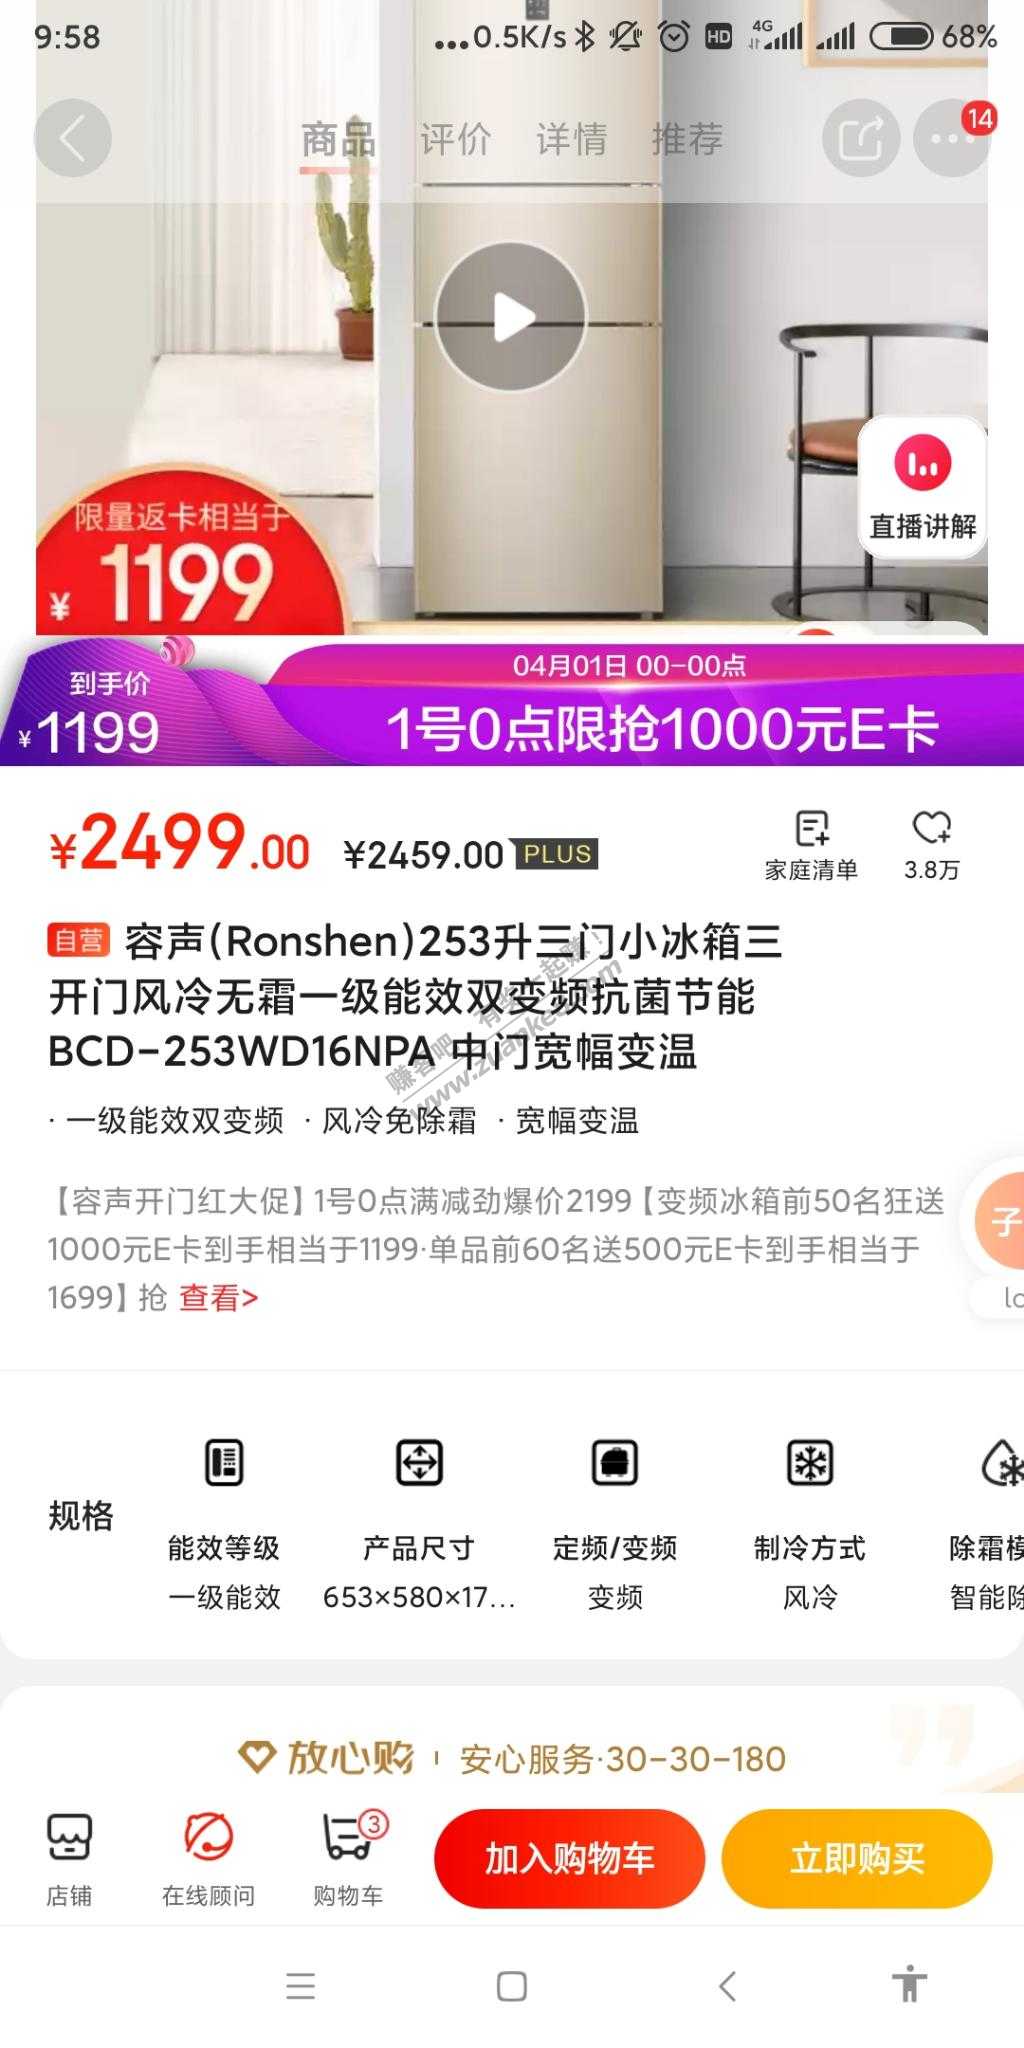 今晚又有返1000的冰箱了-惠小助(52huixz.com)